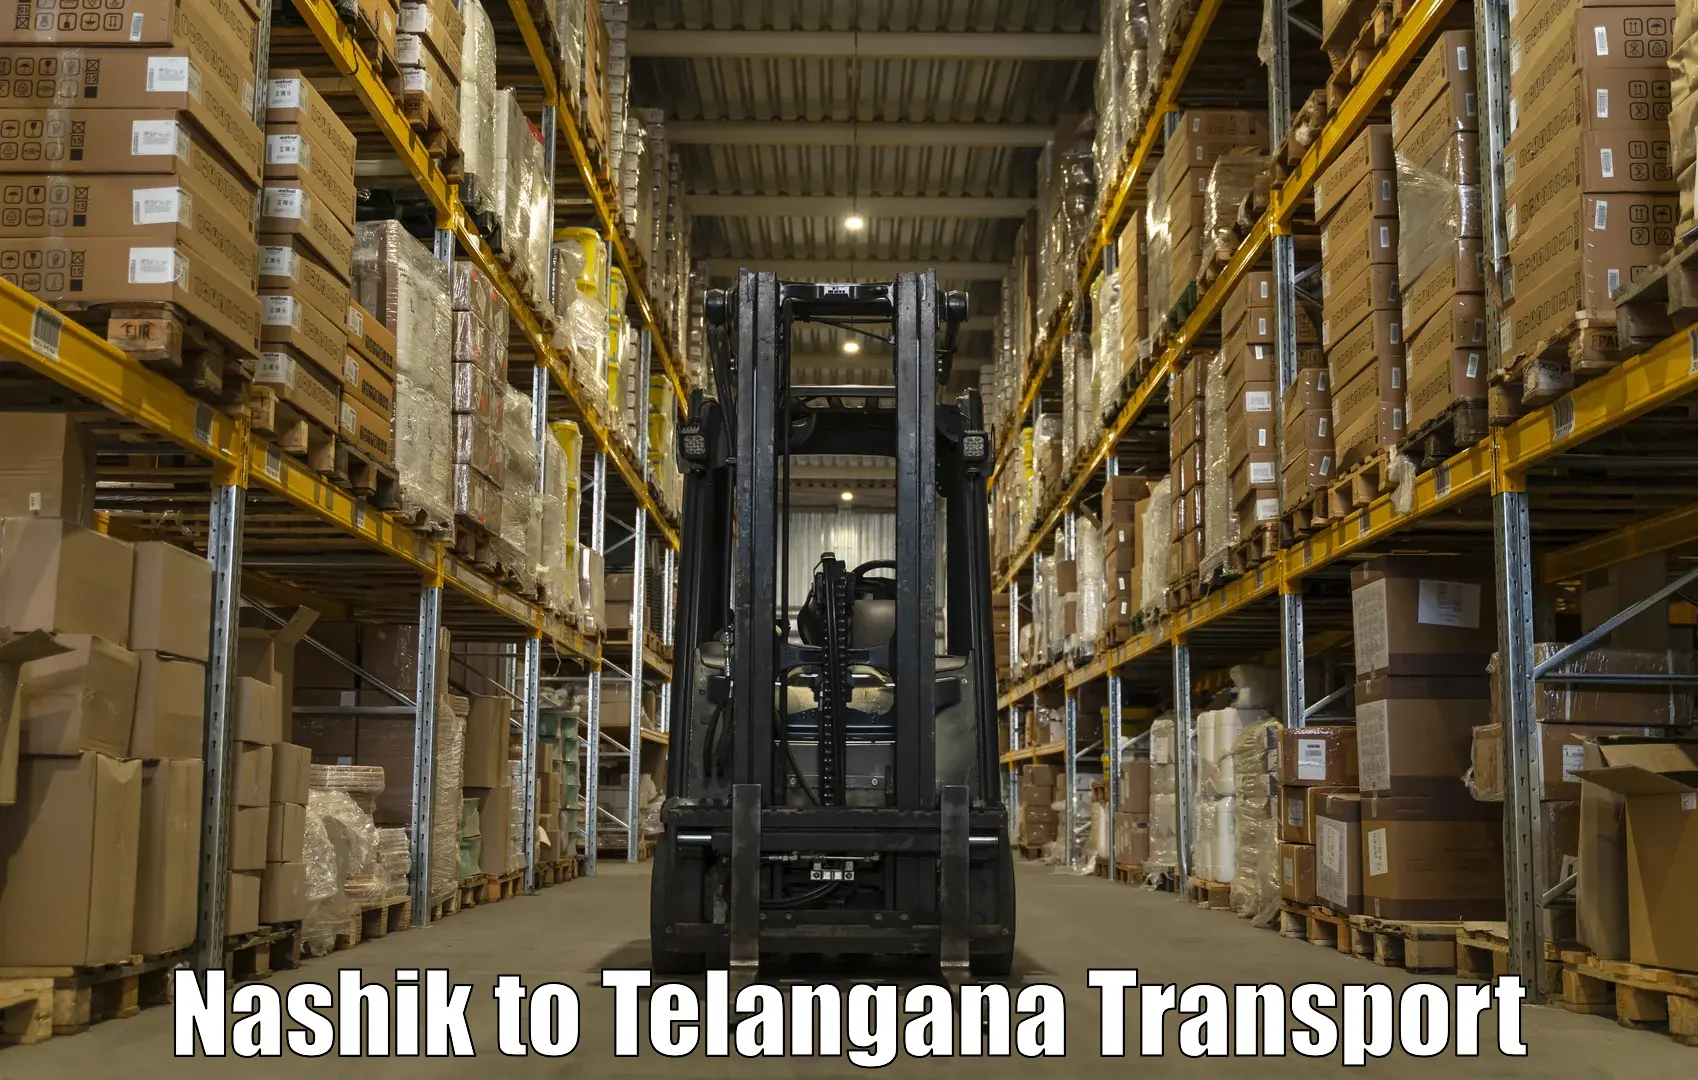 Furniture transport service Nashik to Madgulapally